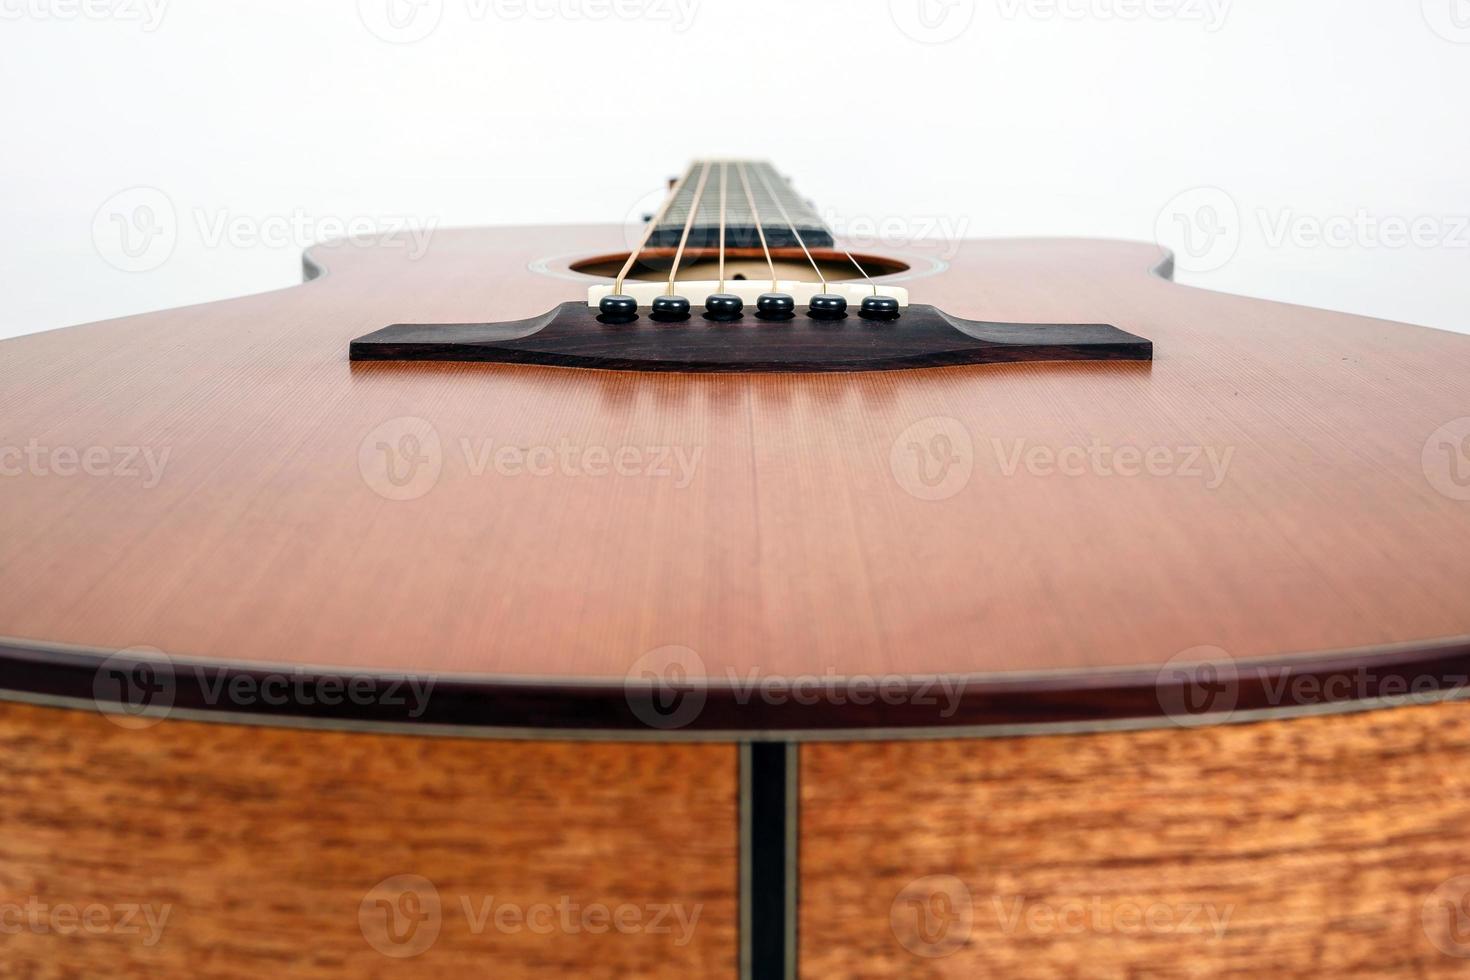 textura de madeira do deck inferior do violão de seis cordas em fundo branco. forma de guitarra foto